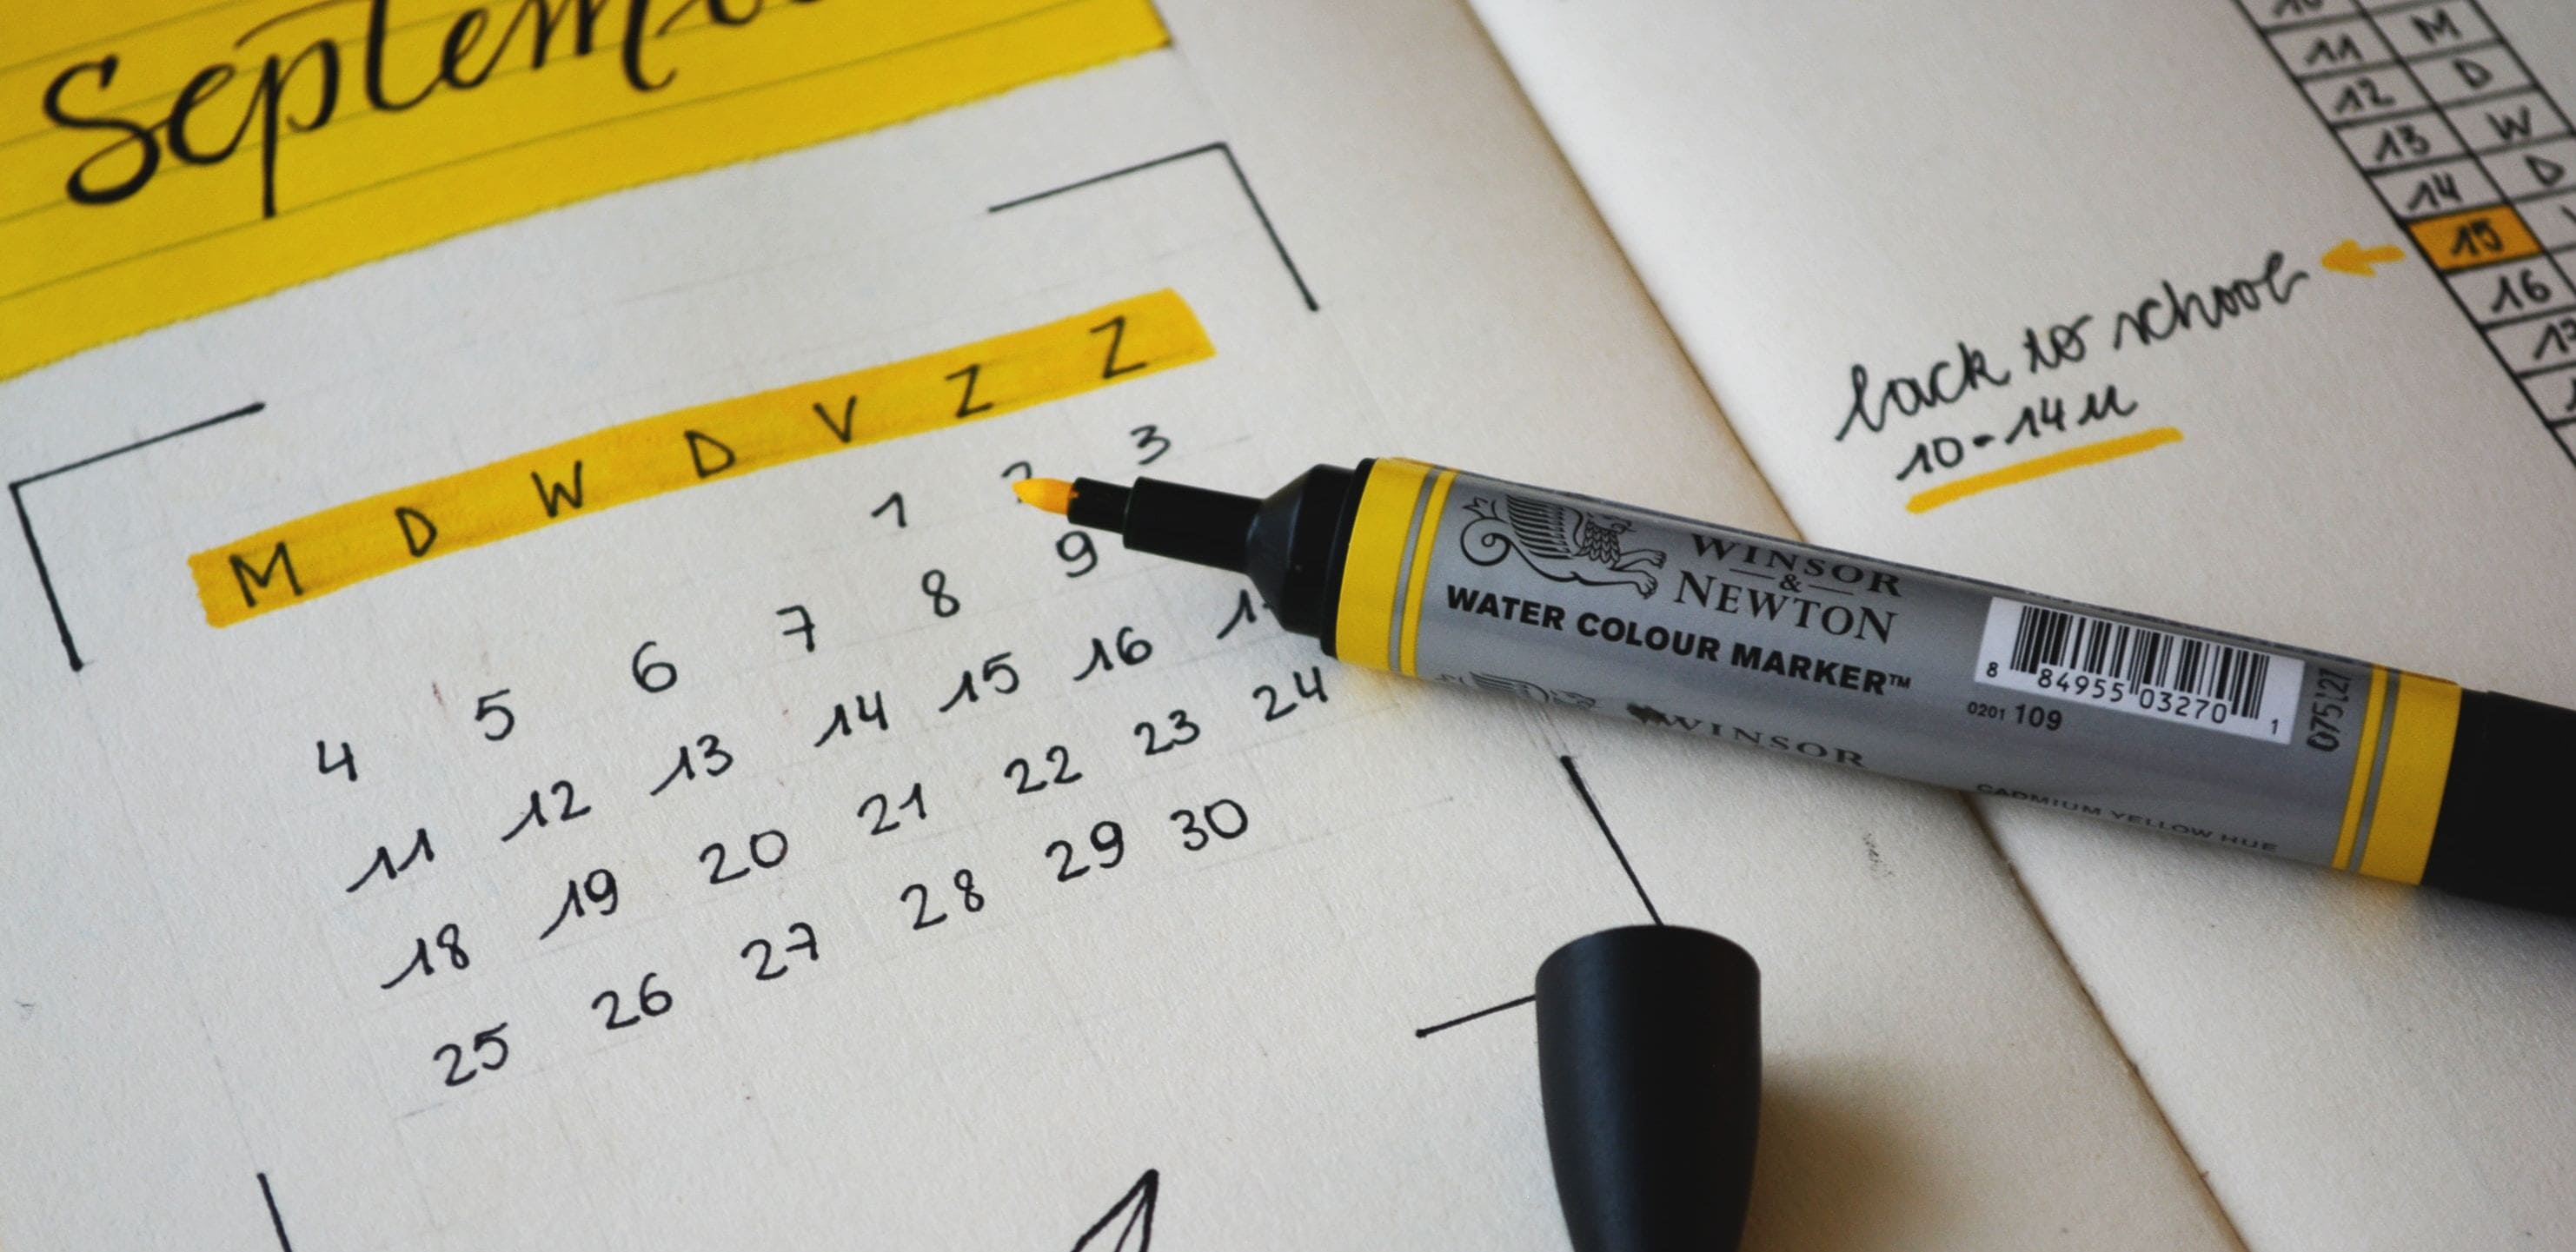 cronograma enem: imagem de u calendário em uma folha com um marca textos por cima.